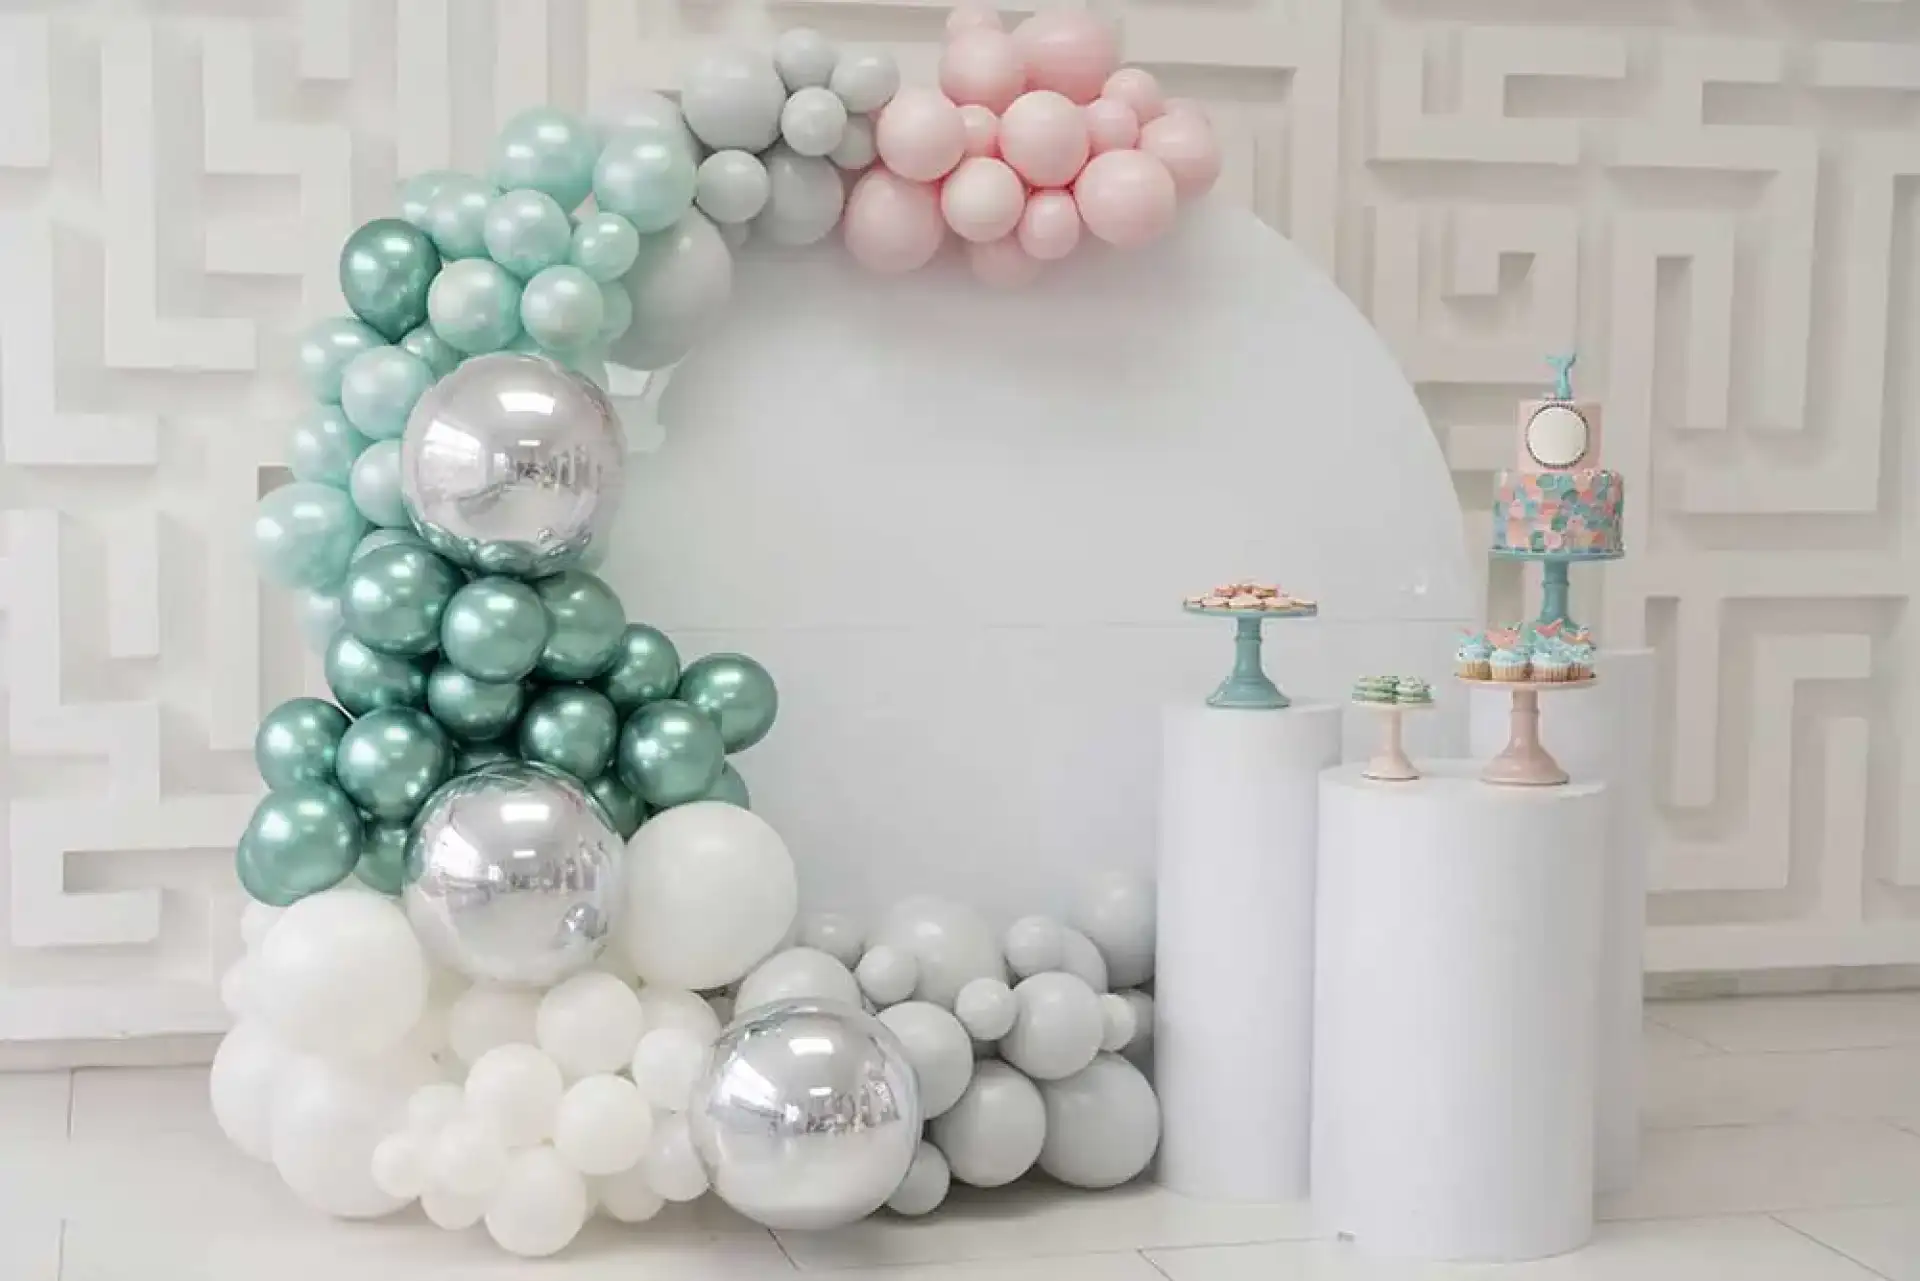 Création de décoration en ballons pour baby shower à Albi